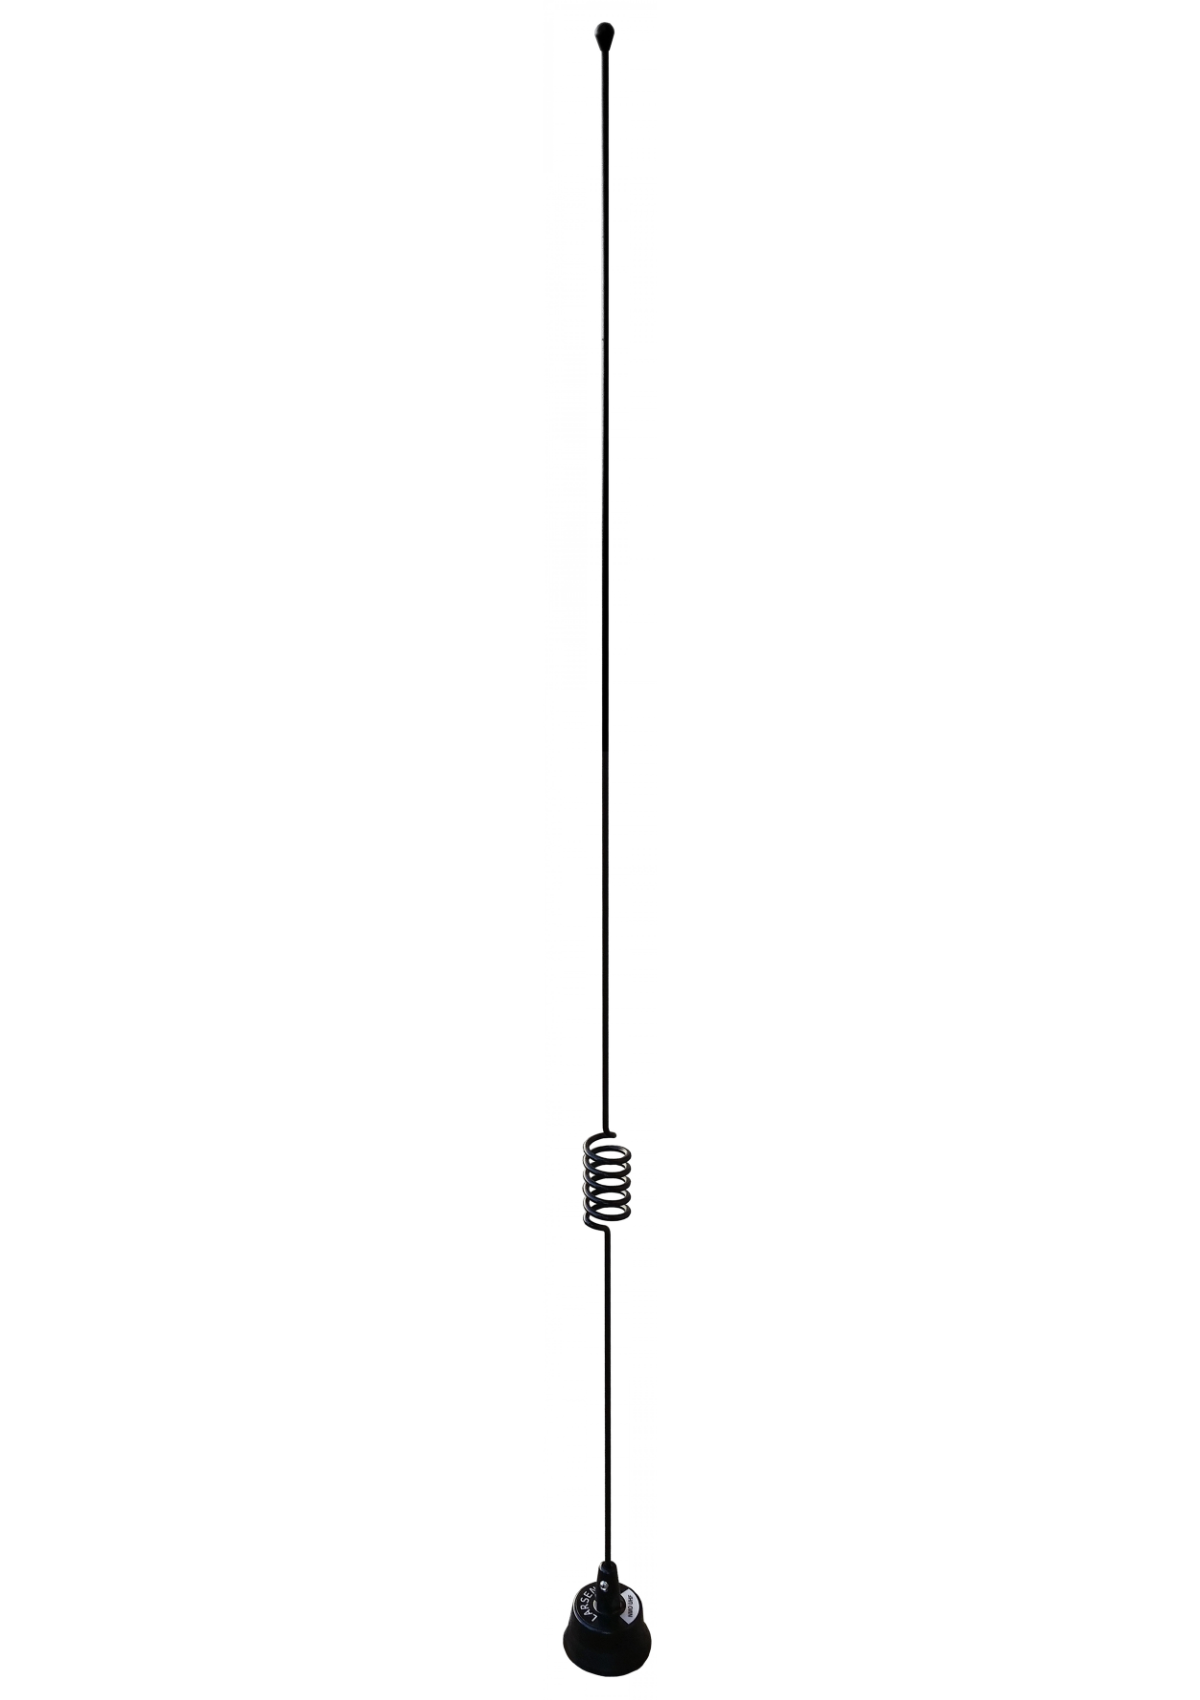 Pulse Larsen LM450C UHF 450-470 MHz Antenne de fouet et bobine de base - Inoxydable